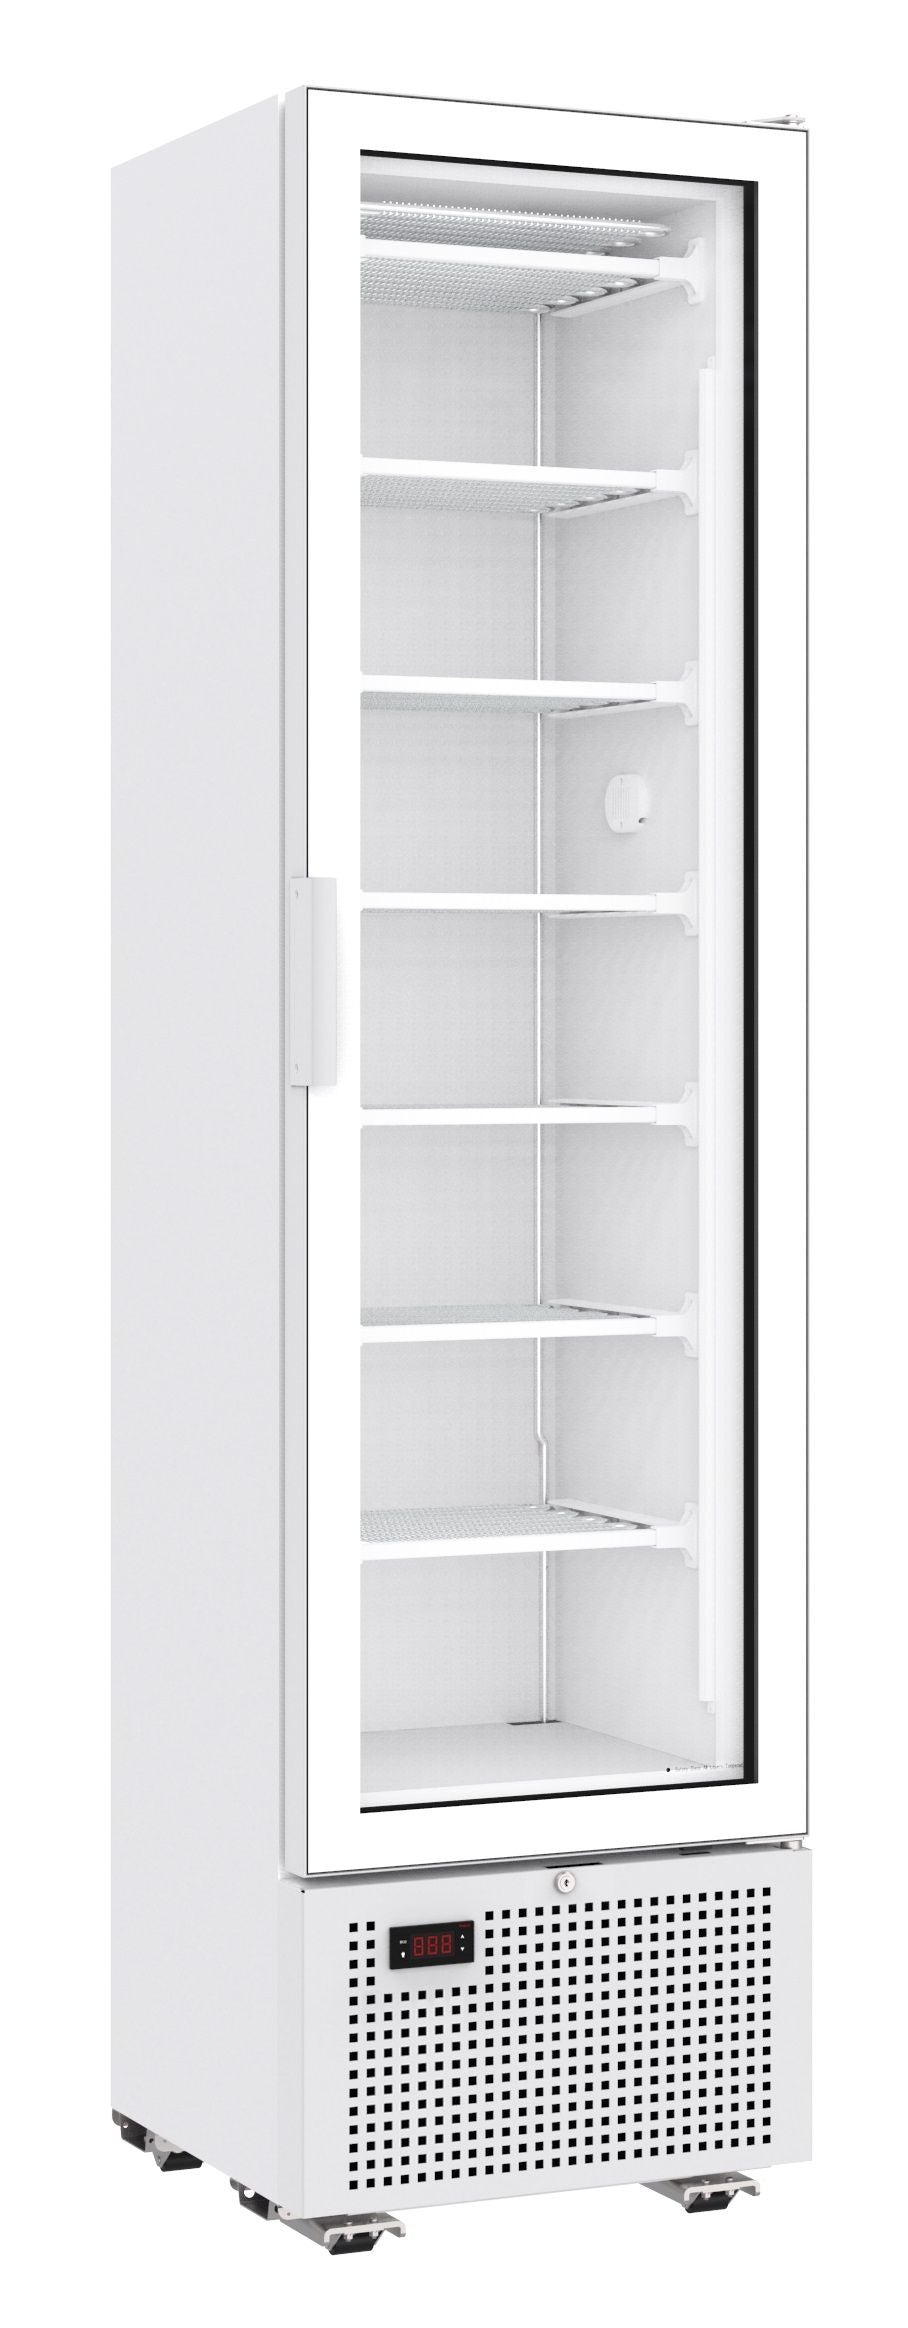 Combisteel Single Glass Door Display Freezer 221 Litre White - 7464.0050 Upright Glass Door Freezers Combisteel   